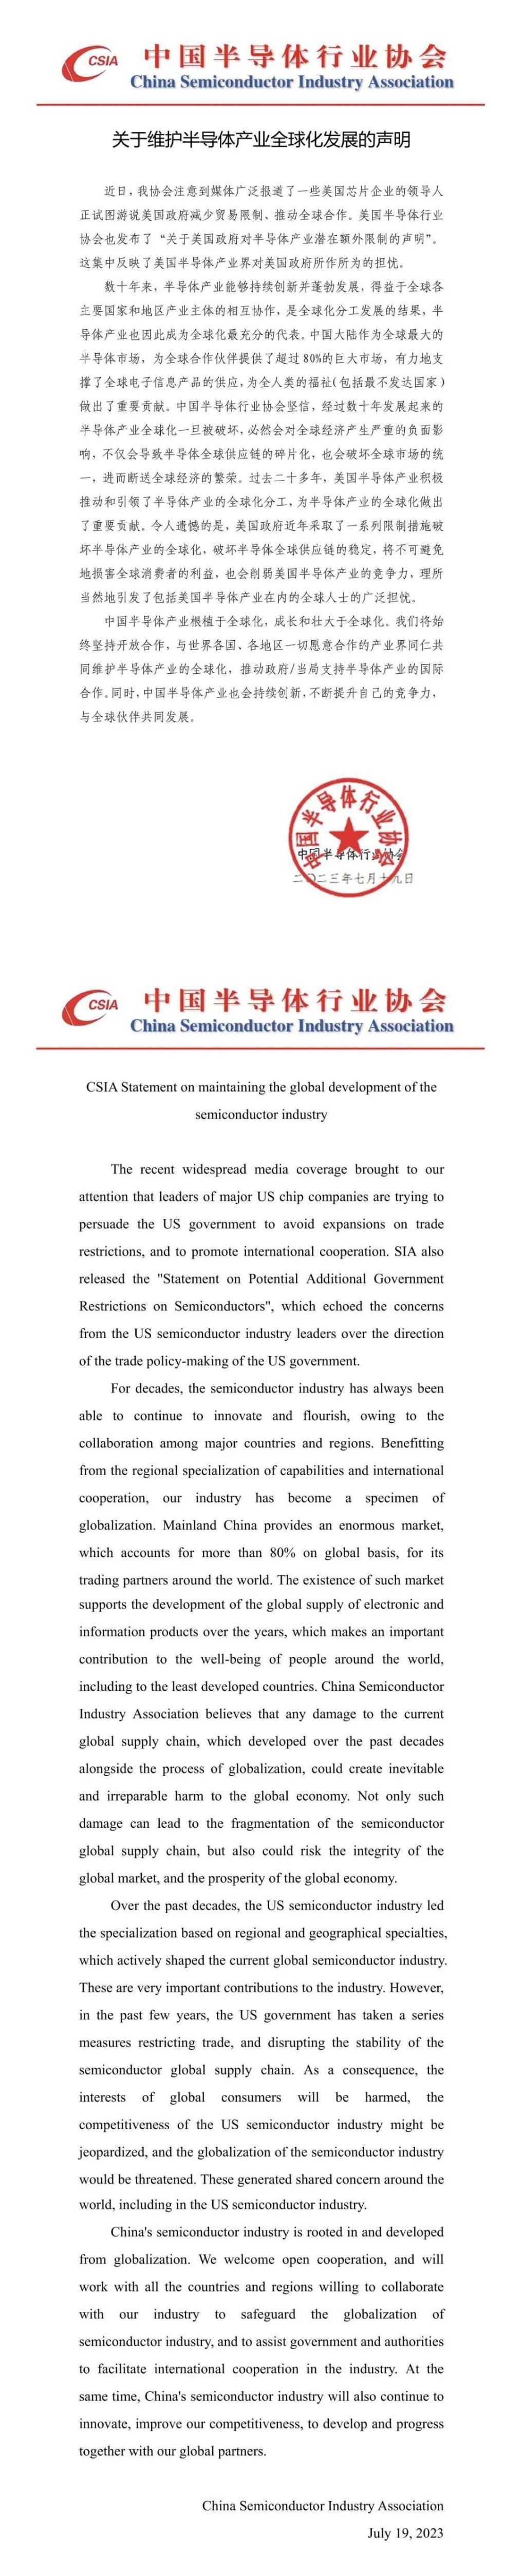 中国半导体行业协会发布声明：维护半导体产业全球化发展